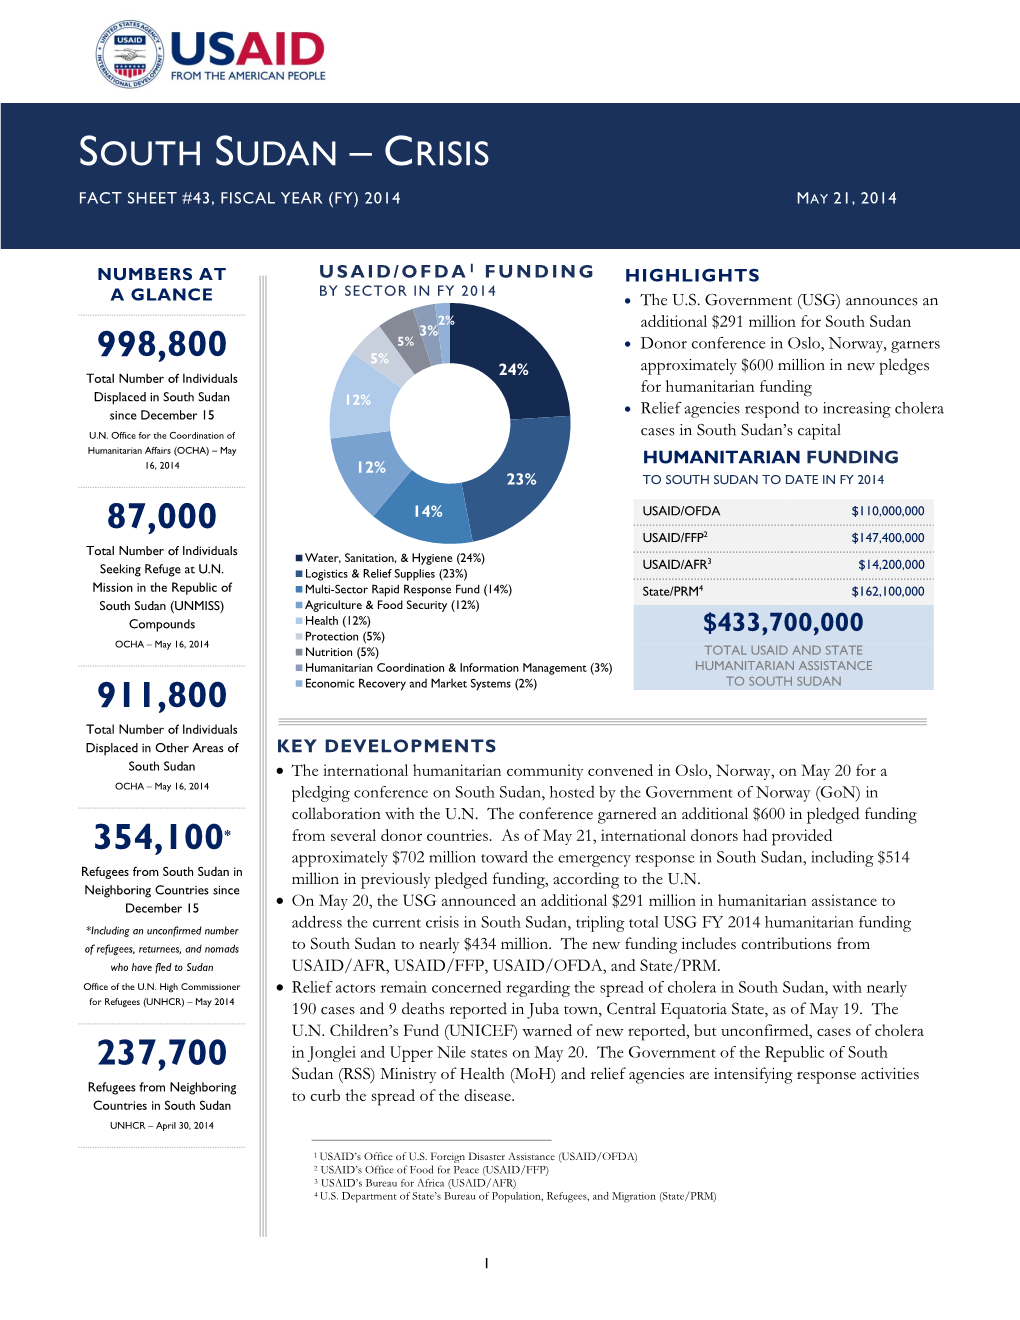 South Sudan Crisis Fact Sheet #43 May 21, 2014